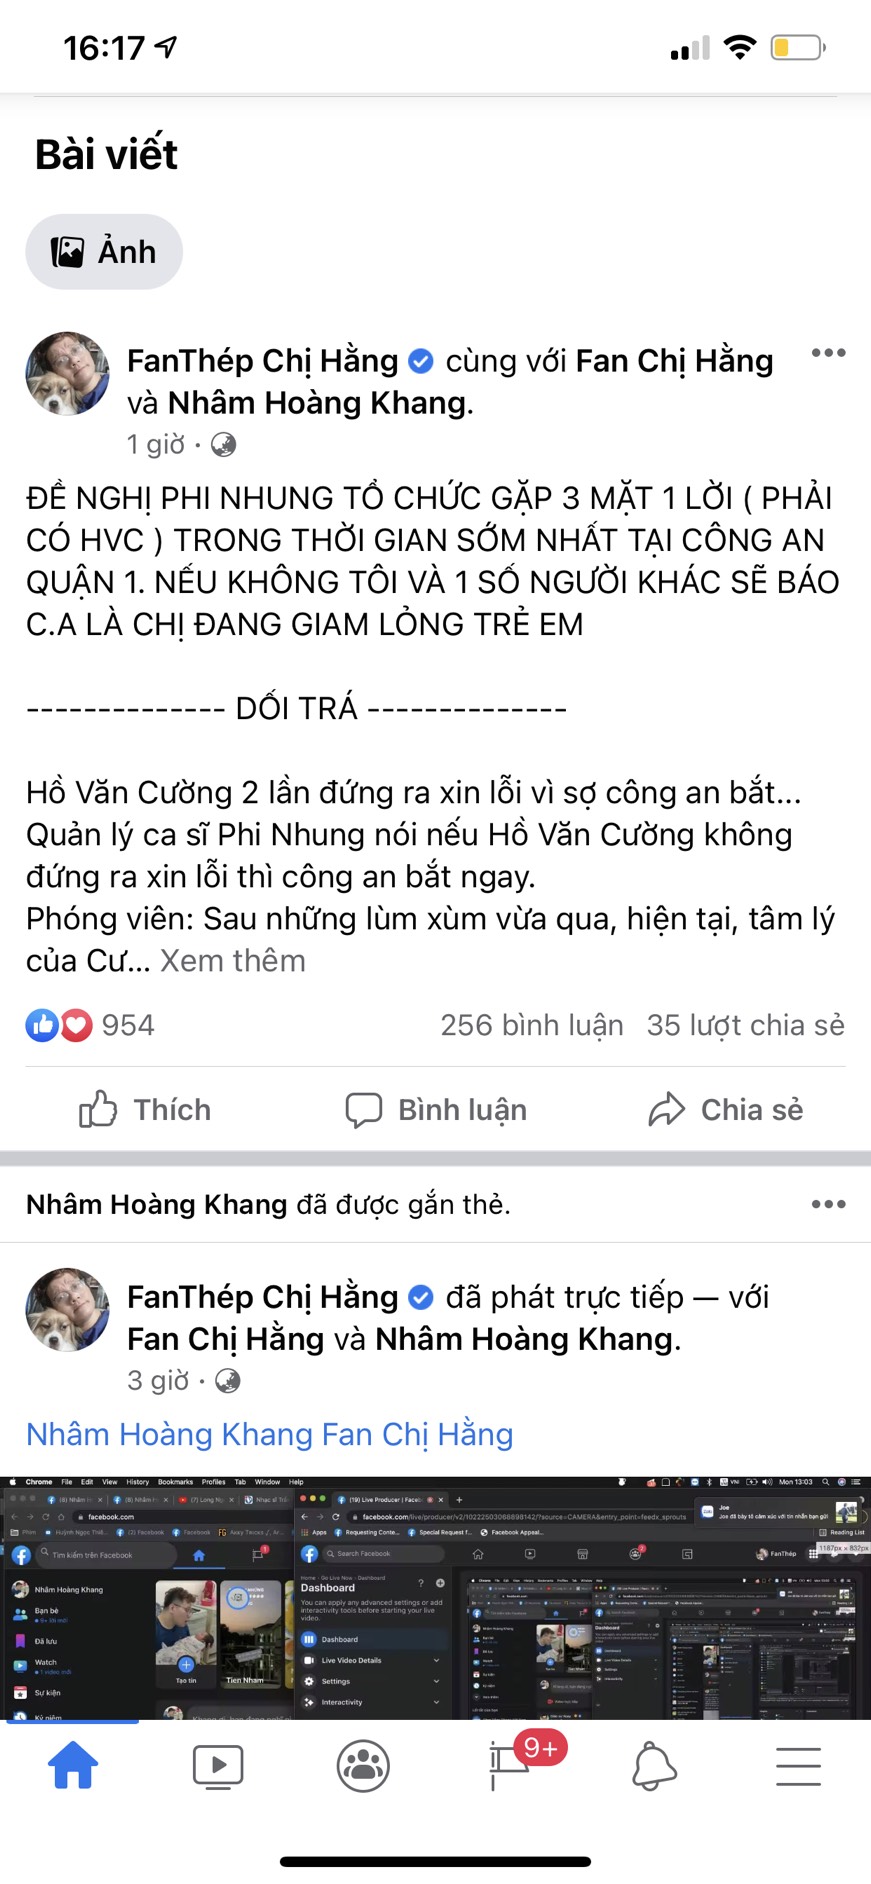 Bài đăng mới đây của Nhâm Hoàng Khang trên mạng xã hội